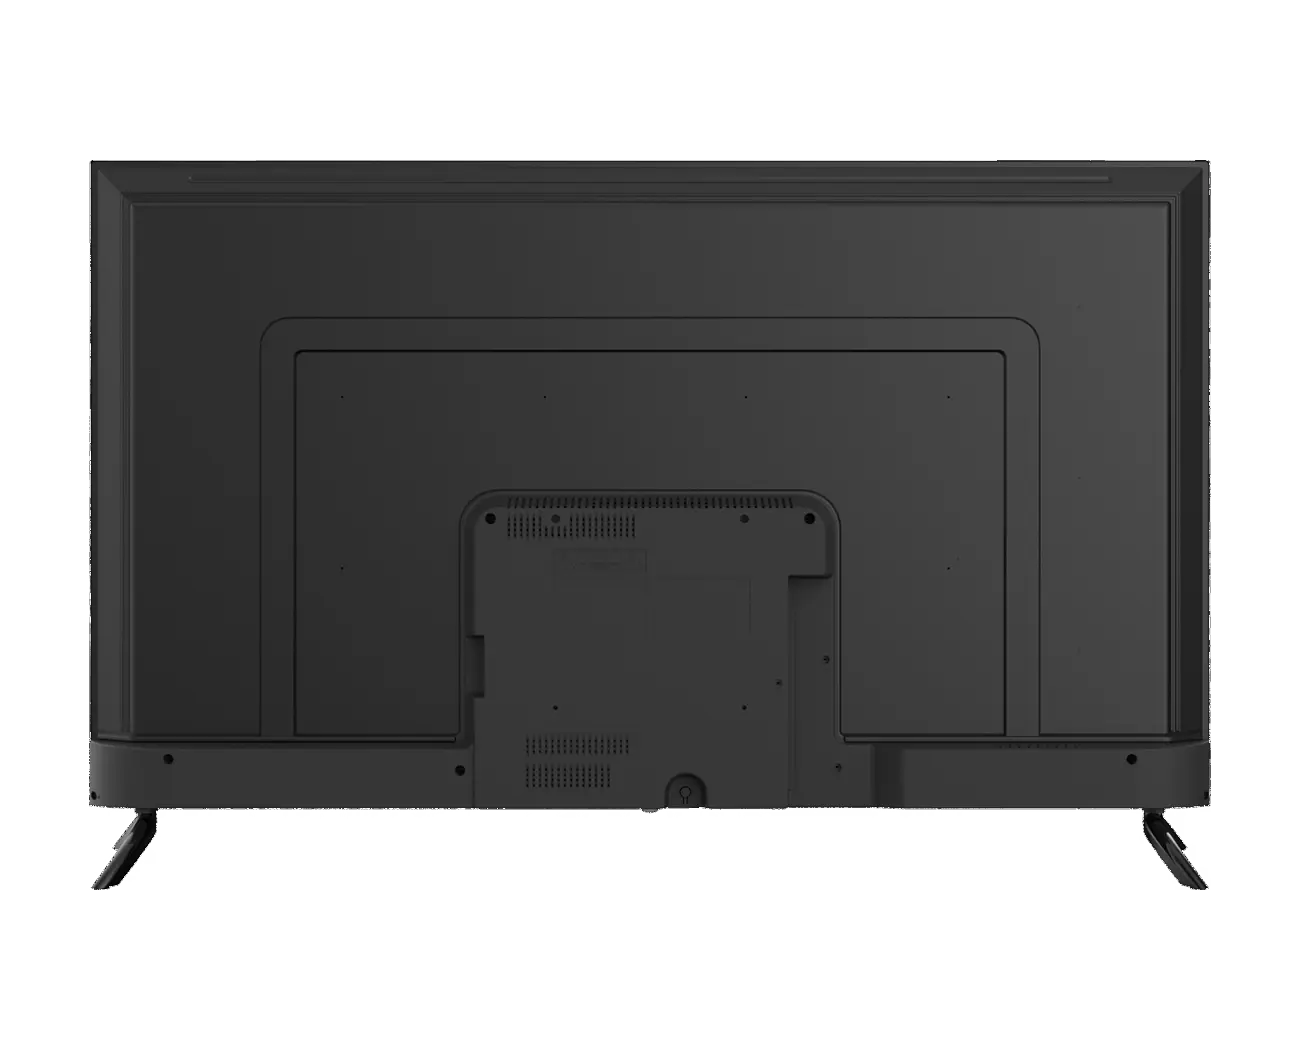 UHD 4K Google TV Blaupunkt 55QBG7000